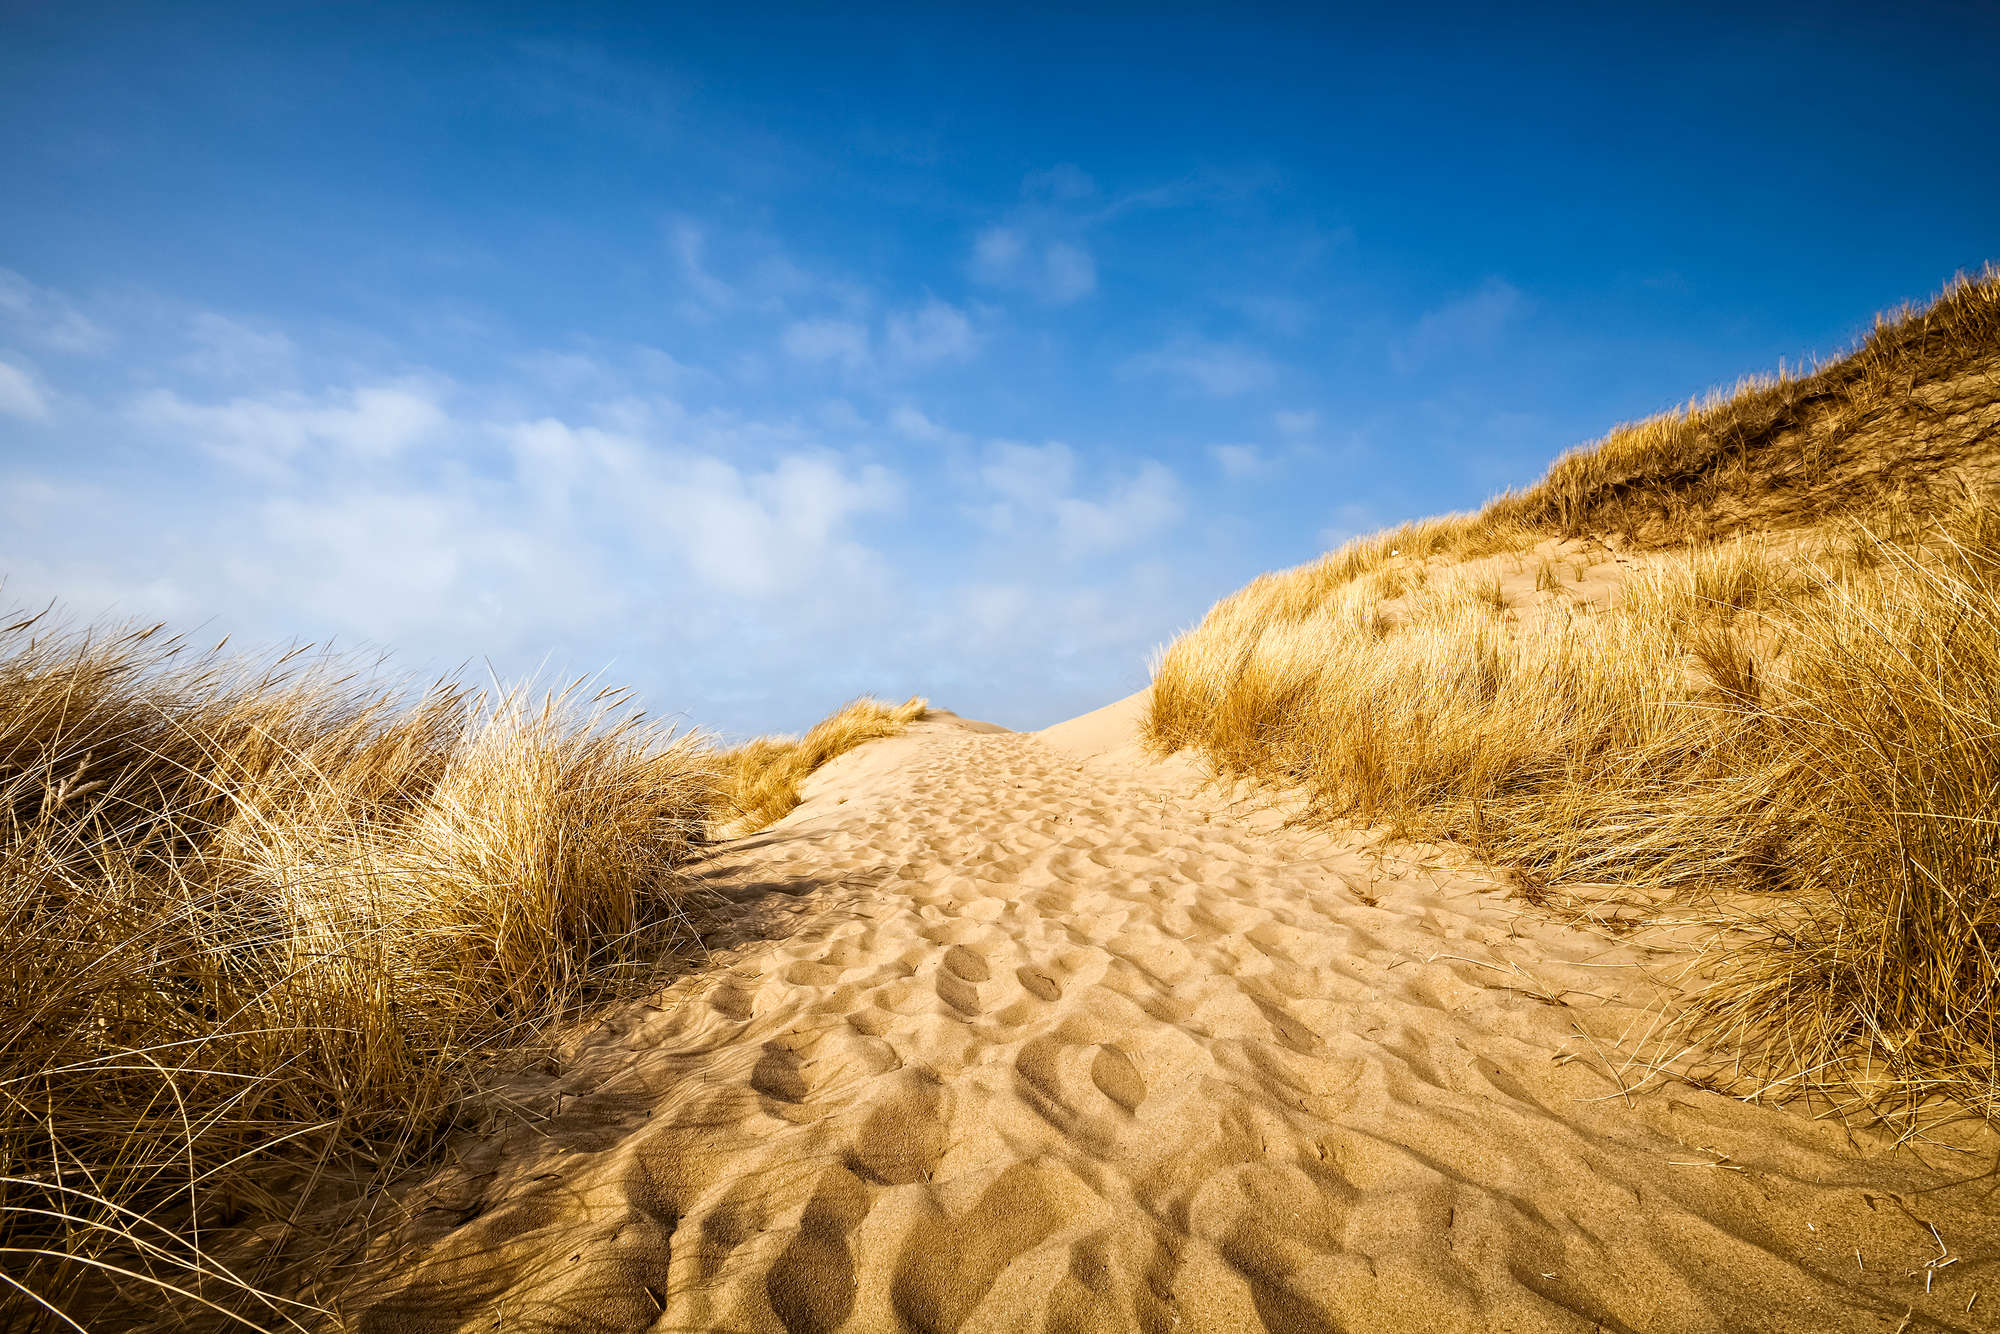             Fotomurali da spiaggia con motivo di dune su tessuto non tessuto liscio madreperlato
        